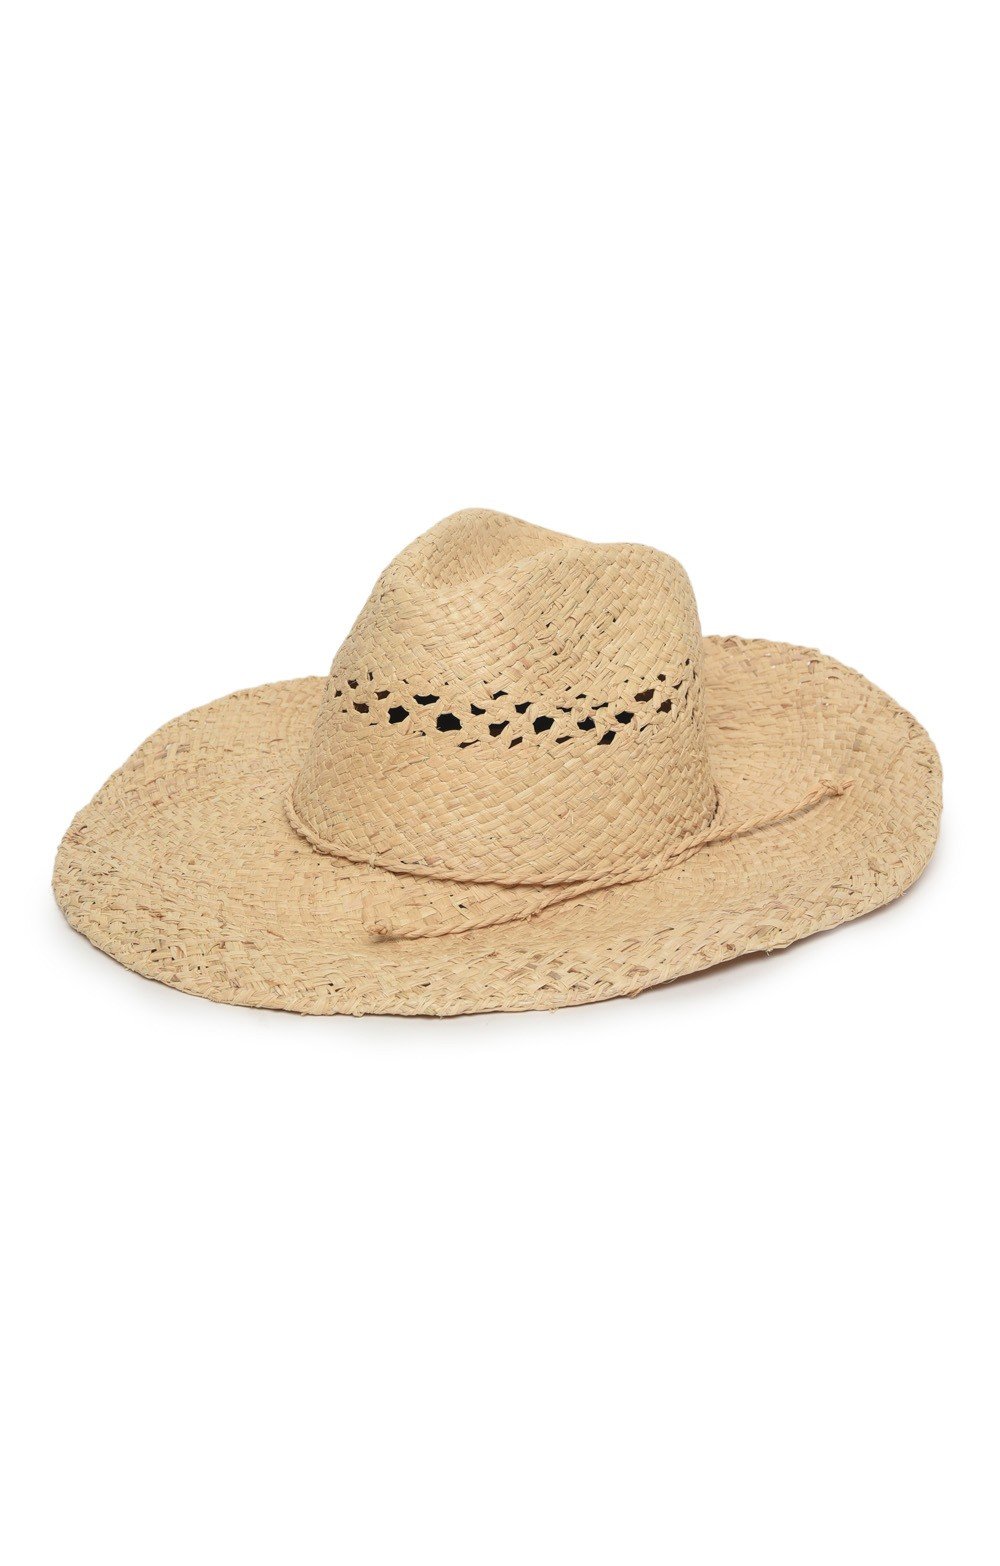  Cowboy Hat - Natural, Natural